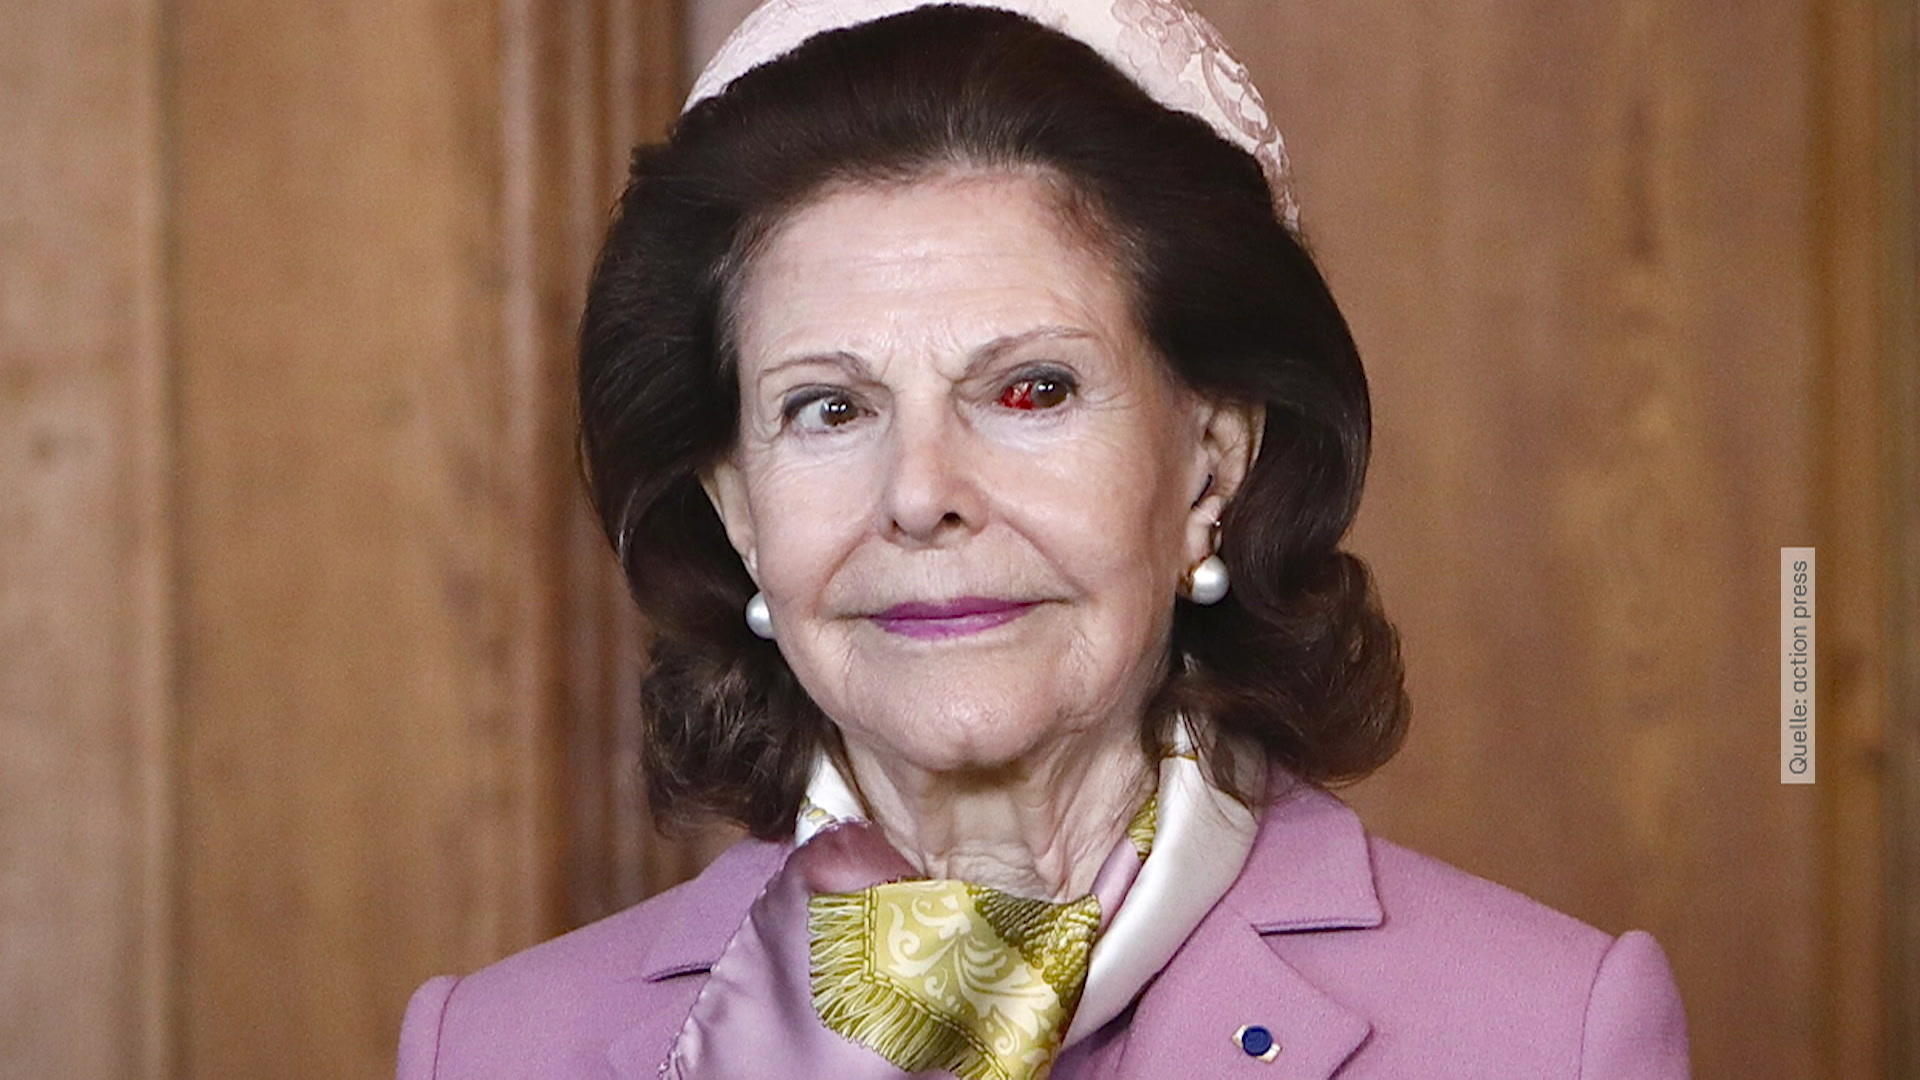 Sorge um Königin Silvia - was ist mit ihrem Auge passiert? Schreck-Moment beim finnischen Staatsbesuch